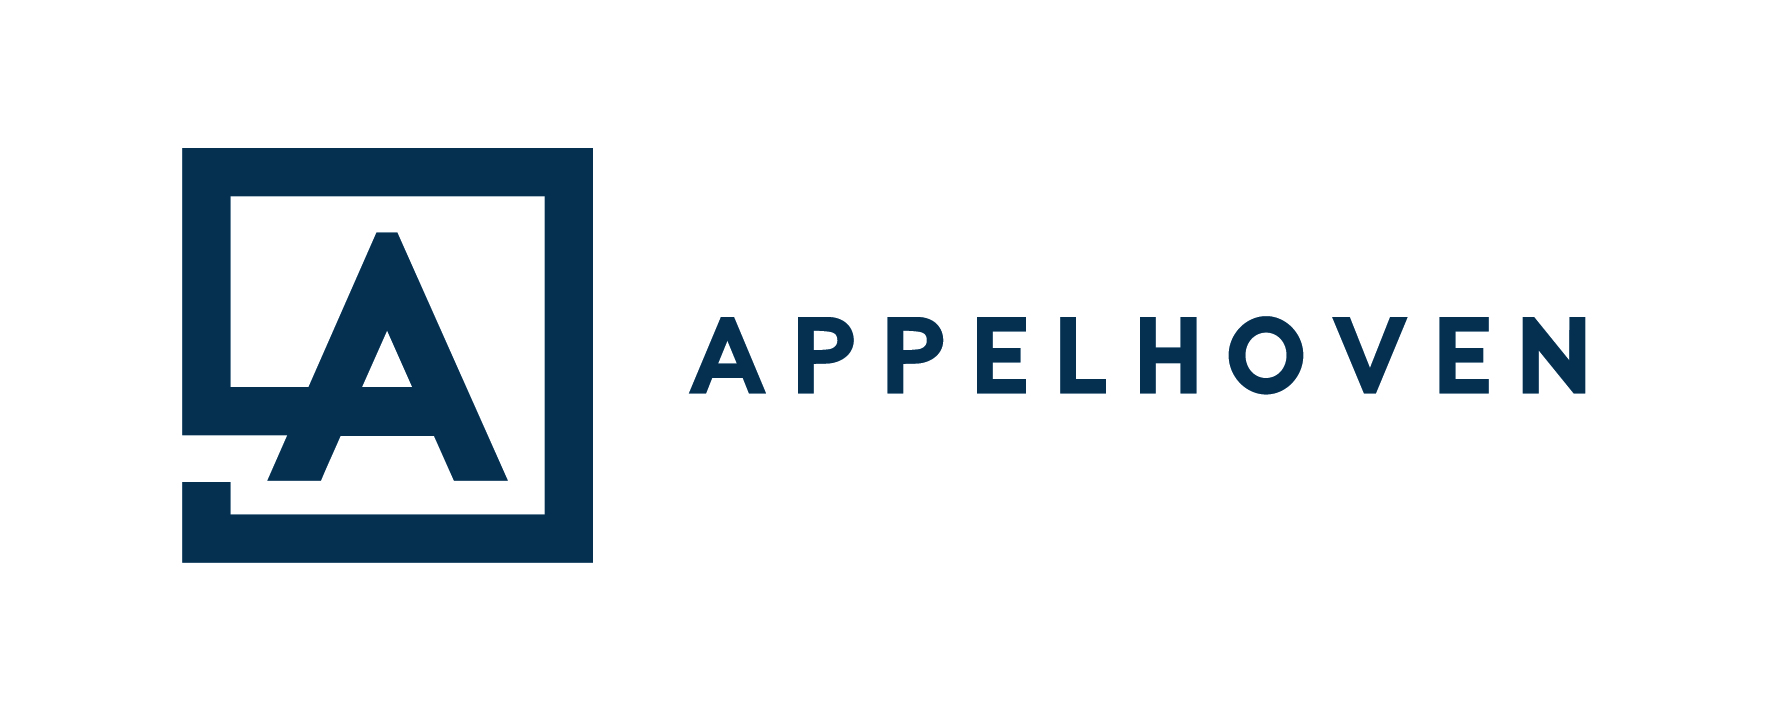 Appelhoven Logo 2019 Blauw